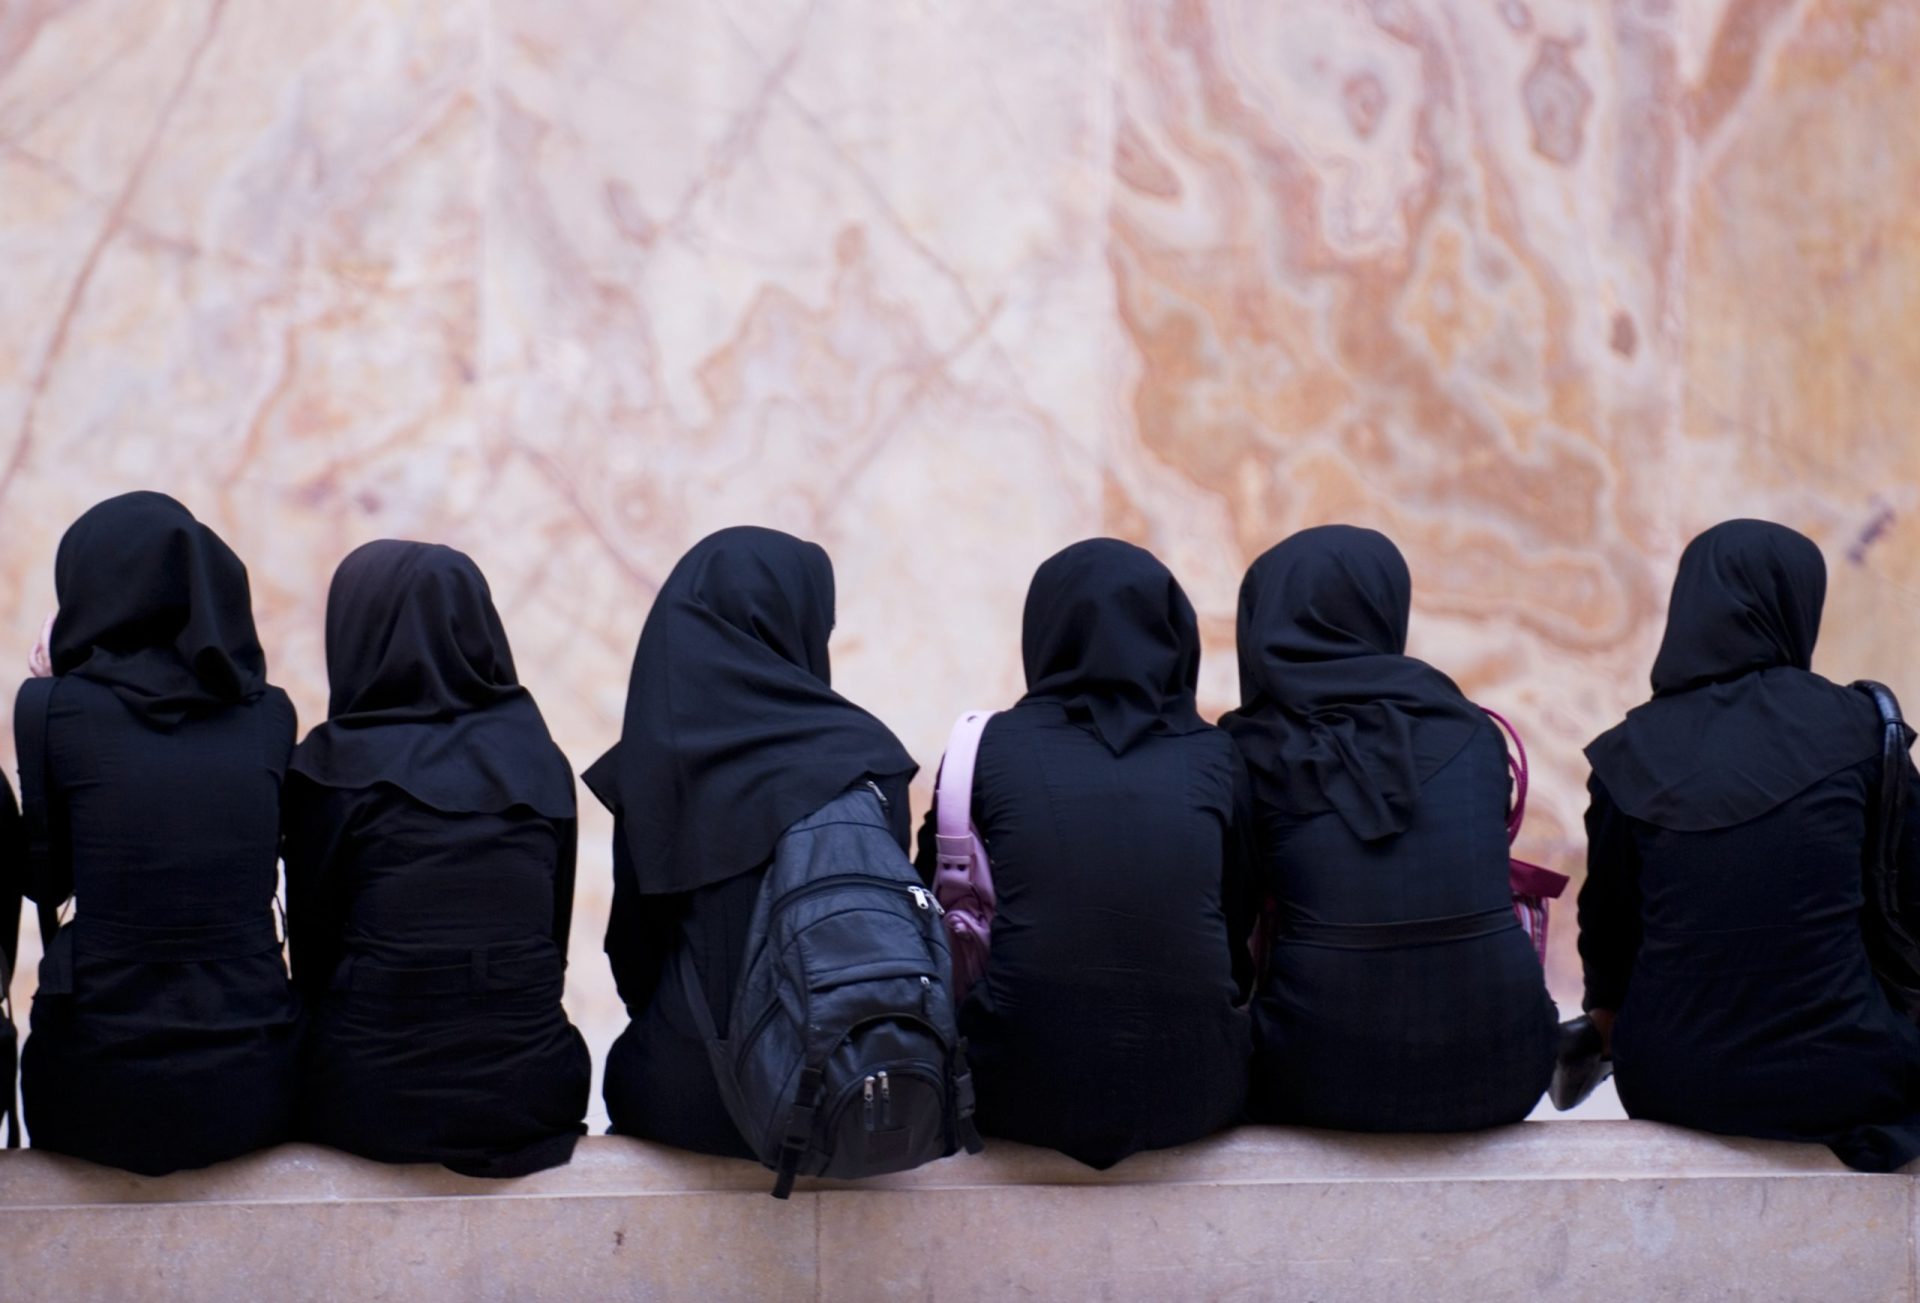 Centenas de raparigas no Irão poderão ter sido envenenadas em salas de aulas